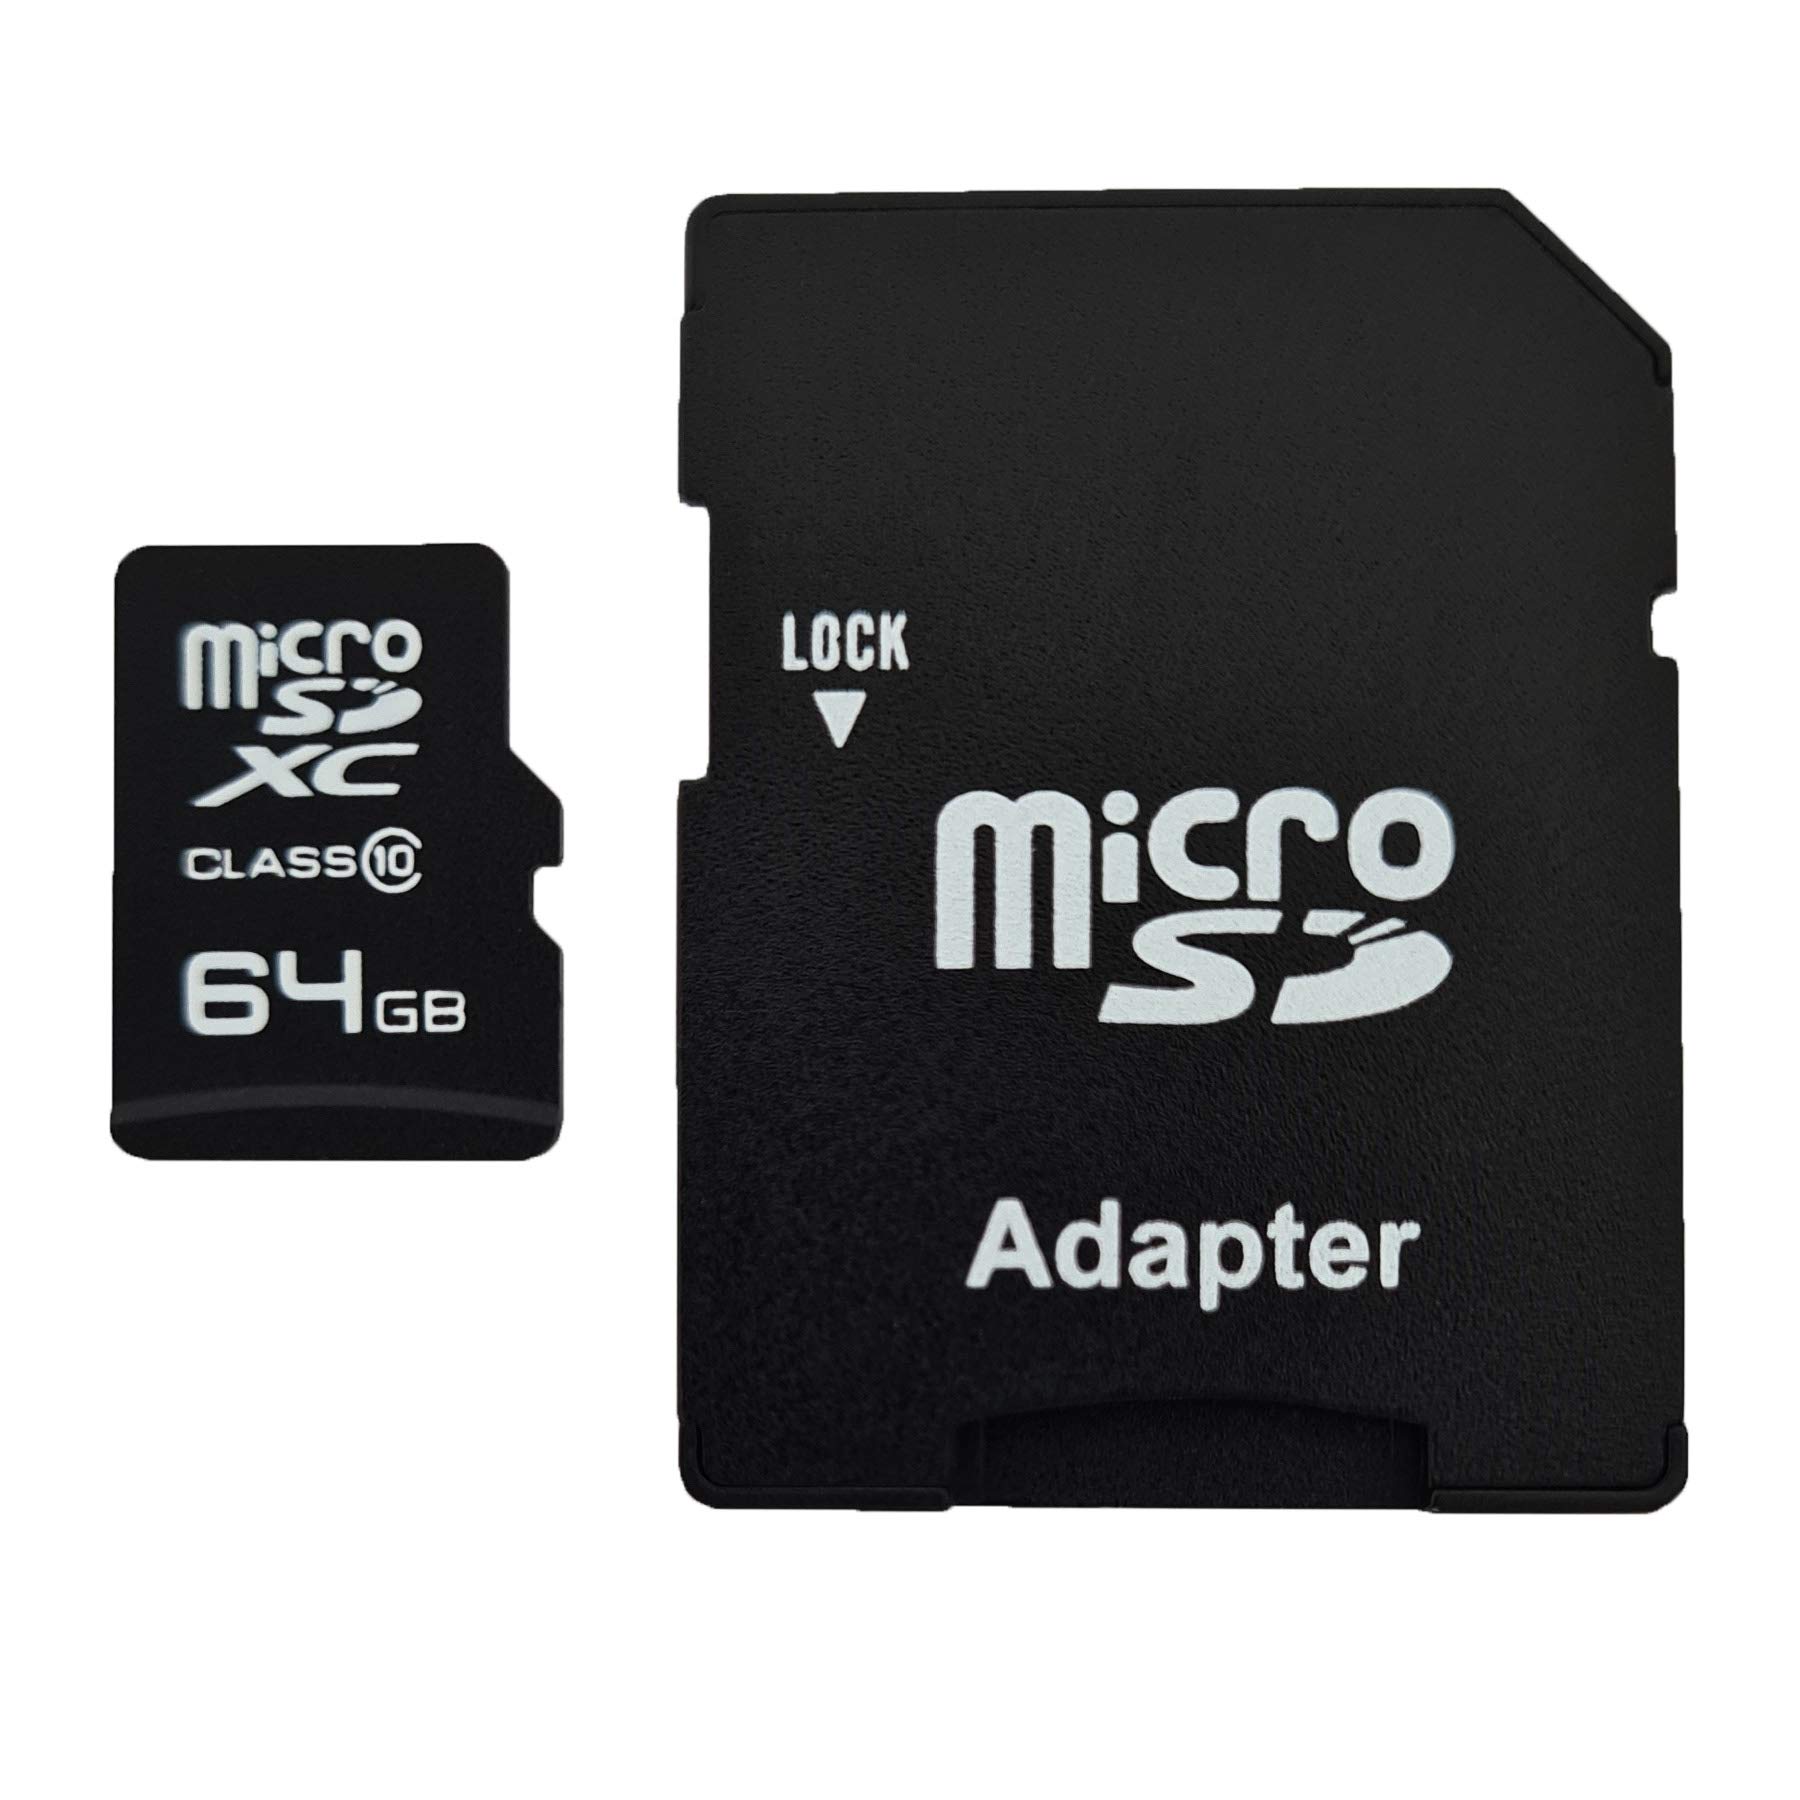 dekoelektropunktde 64GB MicroSDXC Speicherkarte mit Adapter Class 10 kompatibel für Fujifilm X30 X-T1 XF10 X-T30 X-T4